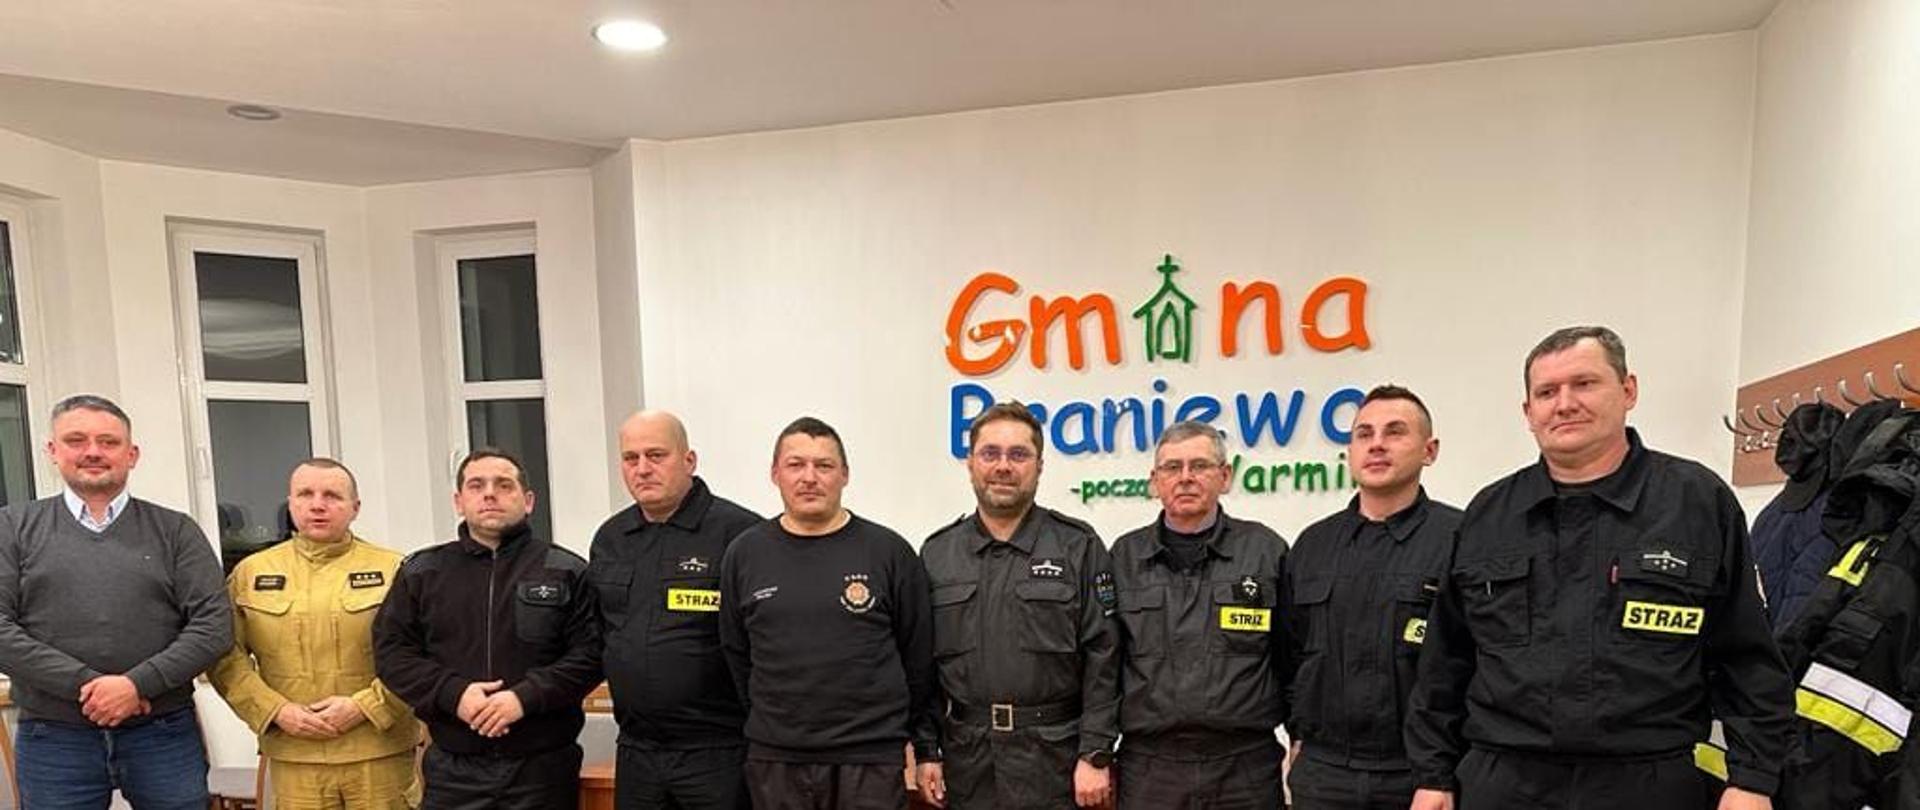 Na zdjęciu obok siebie stoją przedstawiciele Zarządu Oddziału Gminnego Związku Ochotniczych Straży Pożarnych w Braniewie